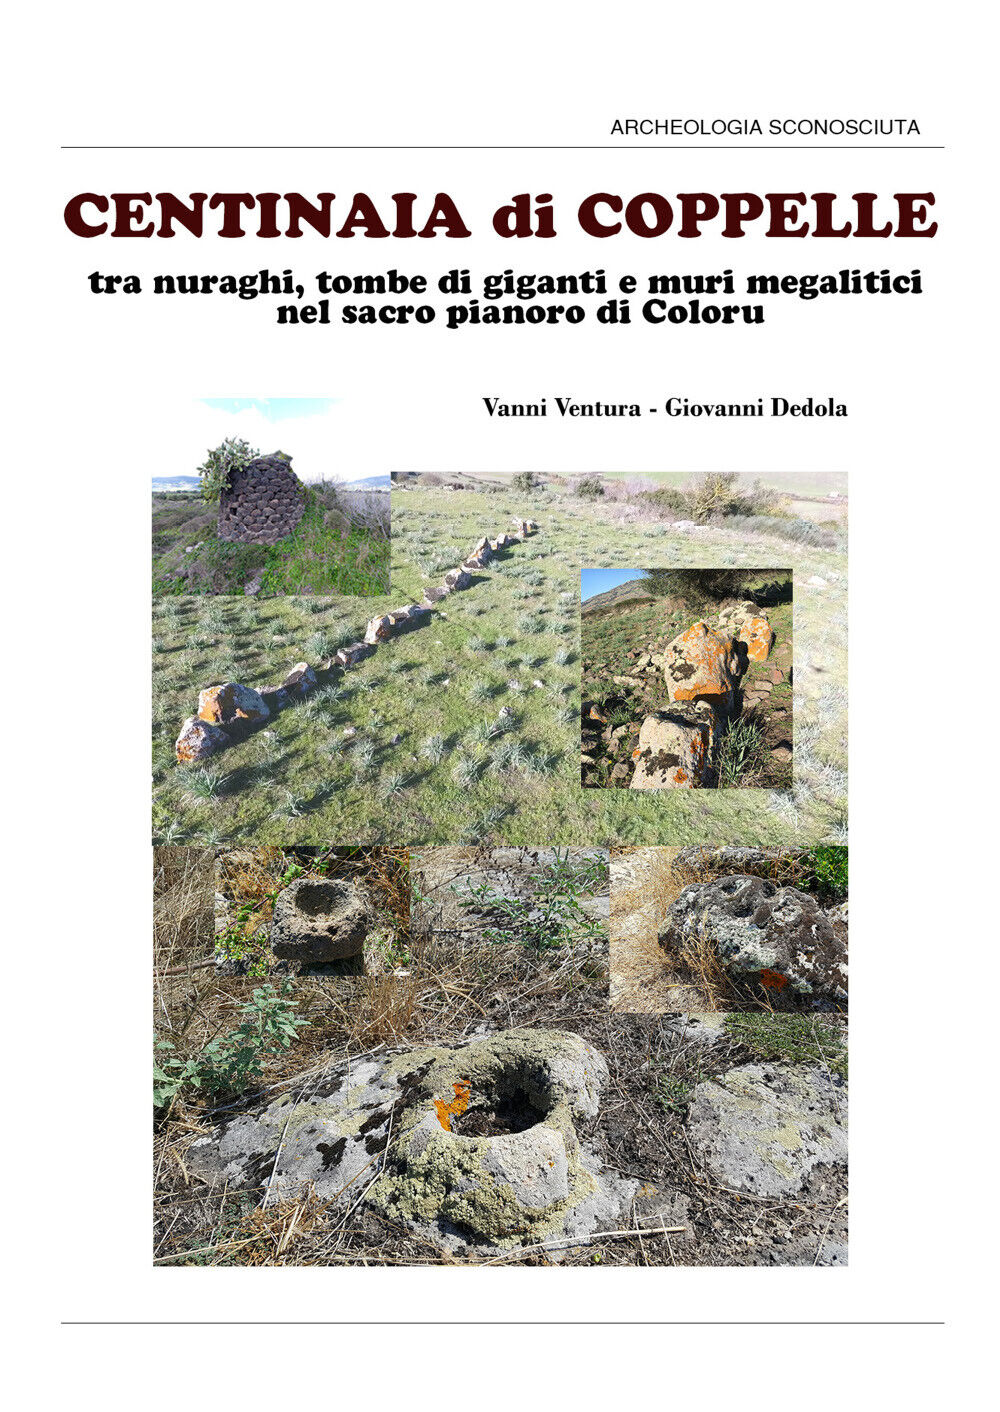 Centinaia di coppelle - Ventura, Dedola,  2019,  Youcanprint libro usato